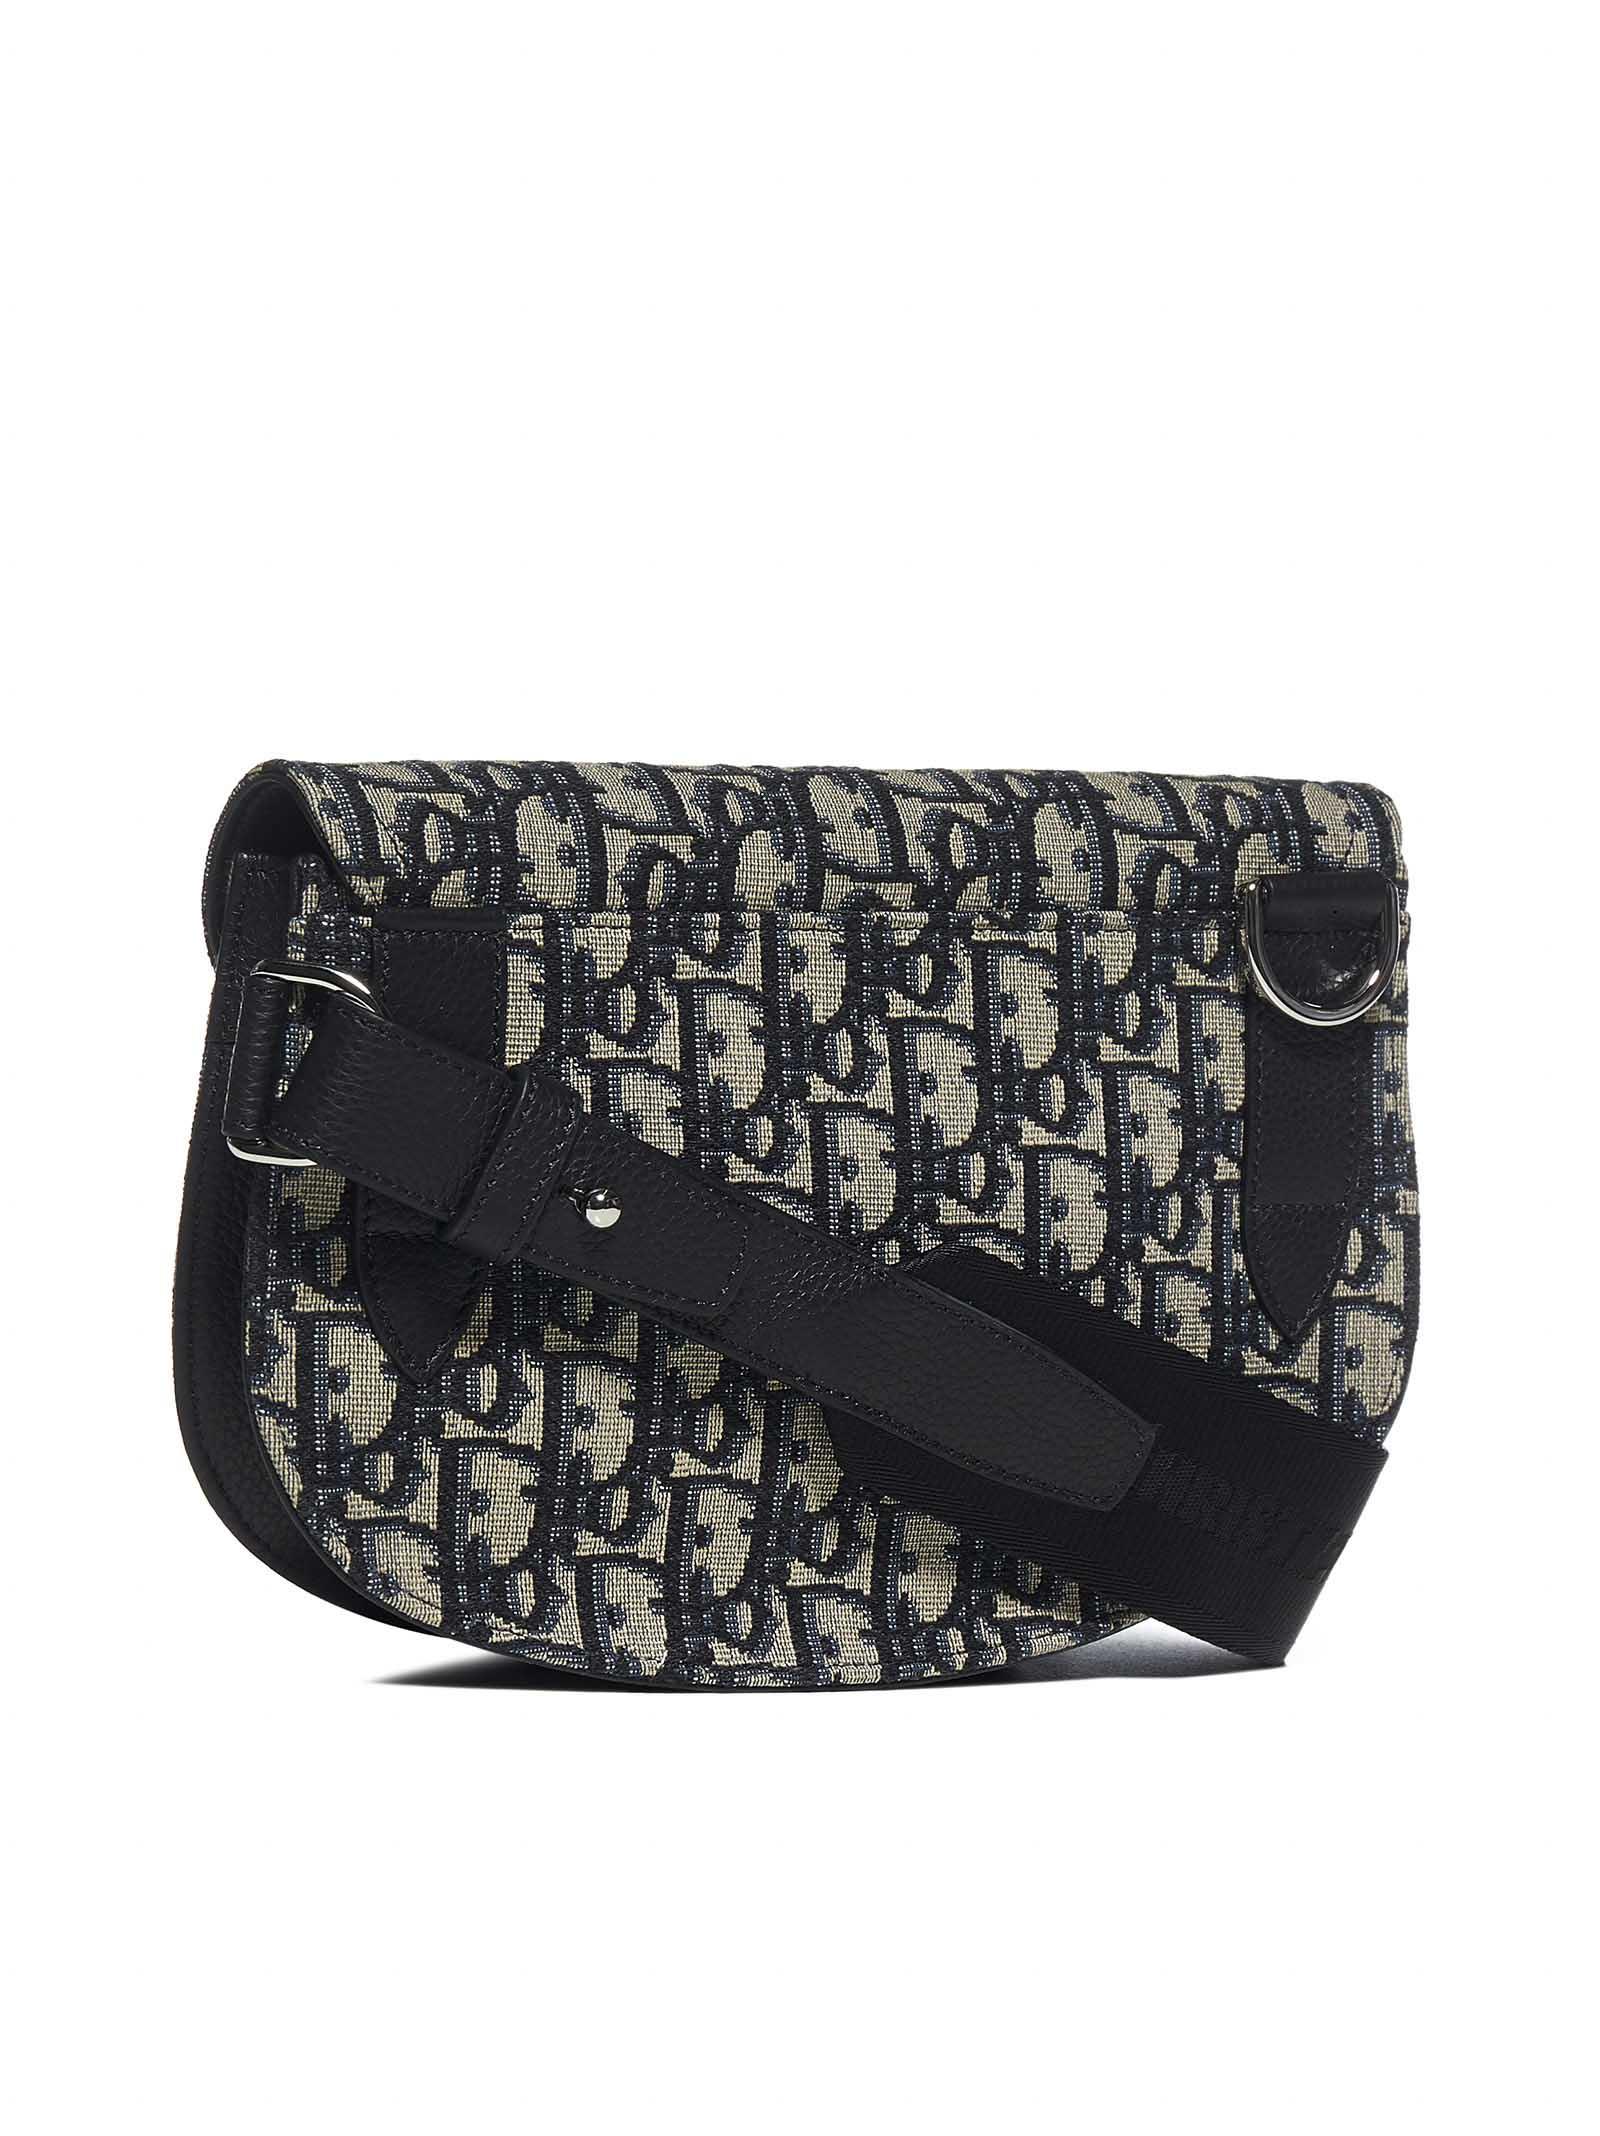 Dior Saddle bag - Black Dior Oblique Jacquard